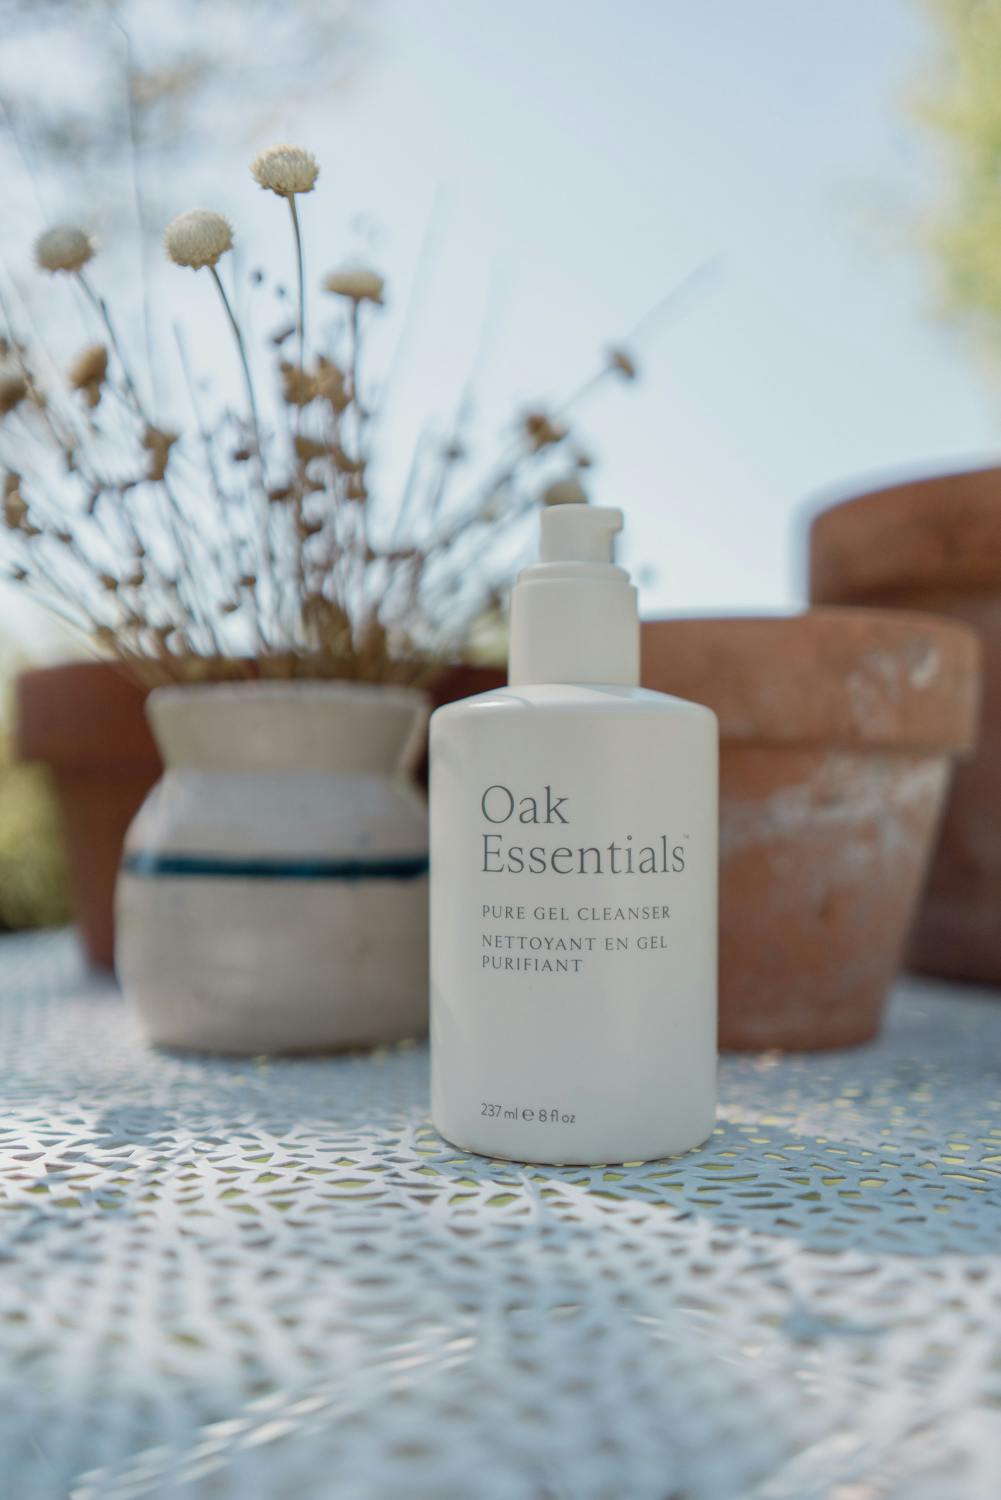 Oak essentials skincare review 1